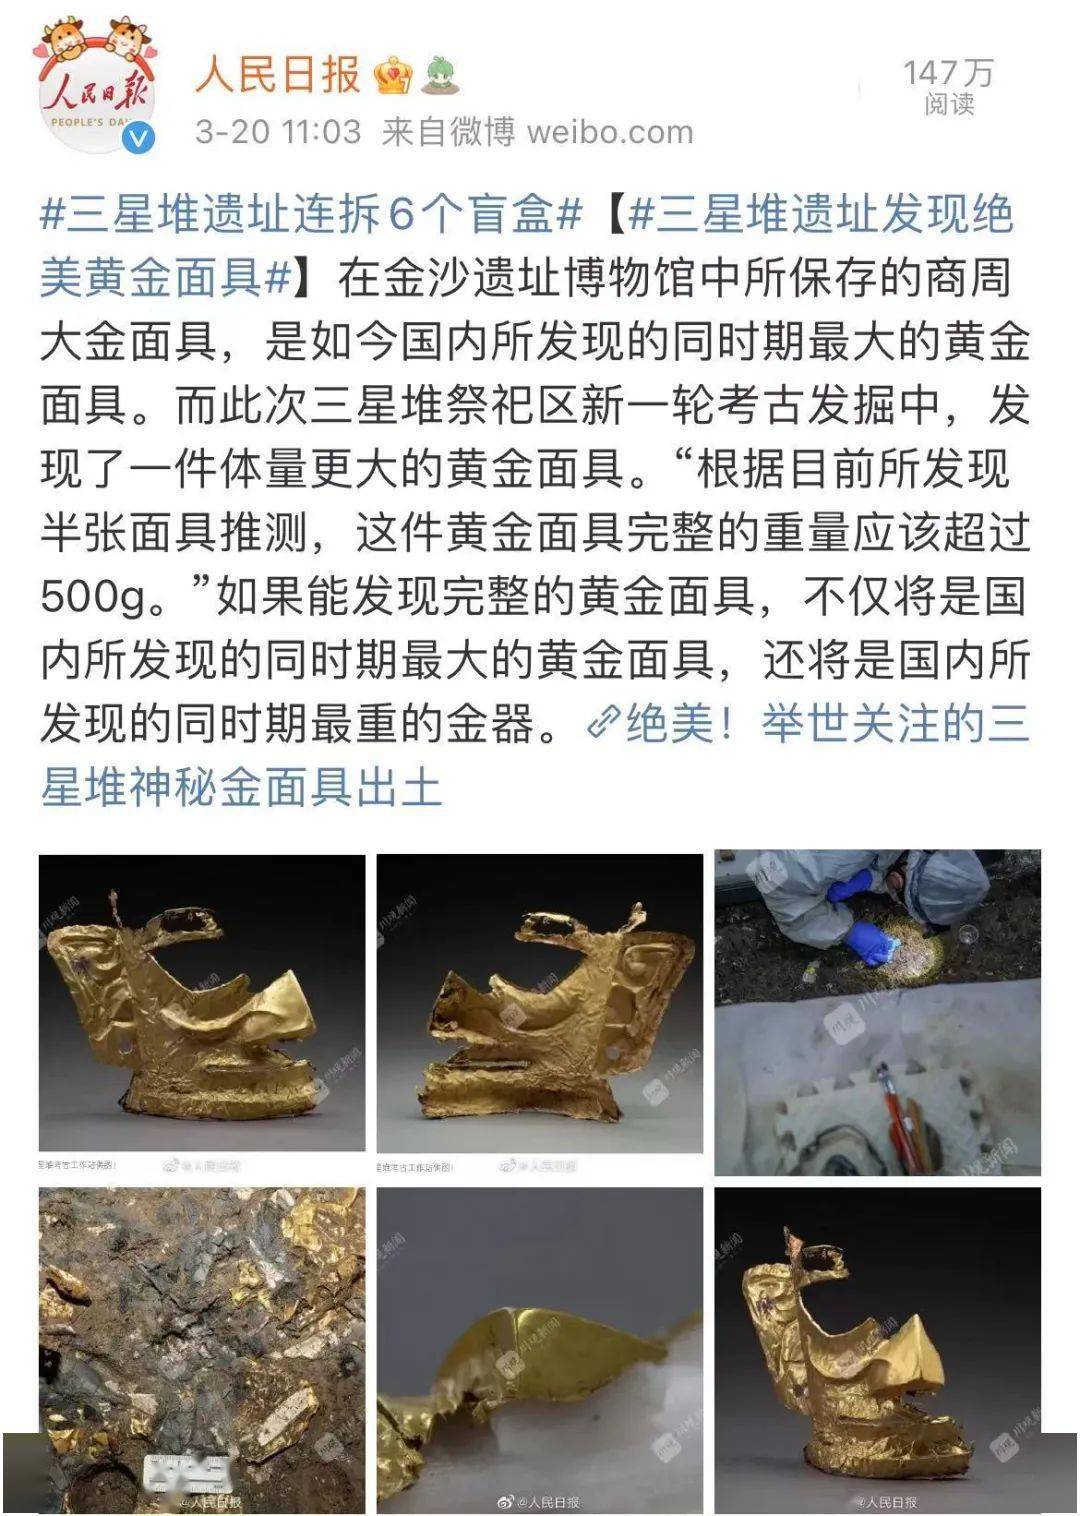 新发现6座器物坑考古工作者在四川三星堆遗址考古中国重大